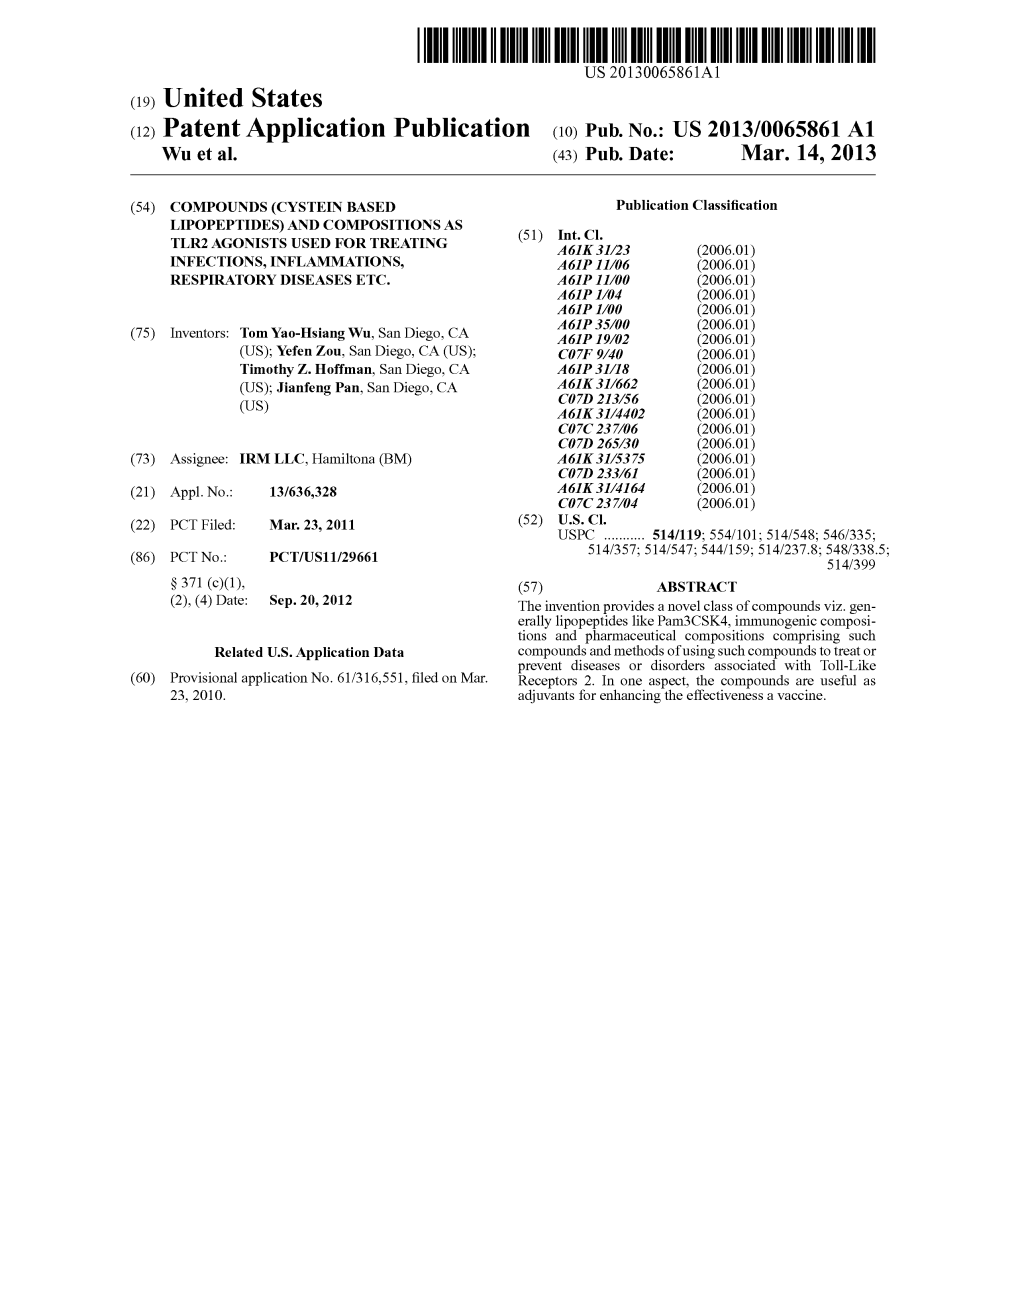 (12) Patent Application Publication (10) Pub. No.: US 2013/0065861 A1 Wu Et Al